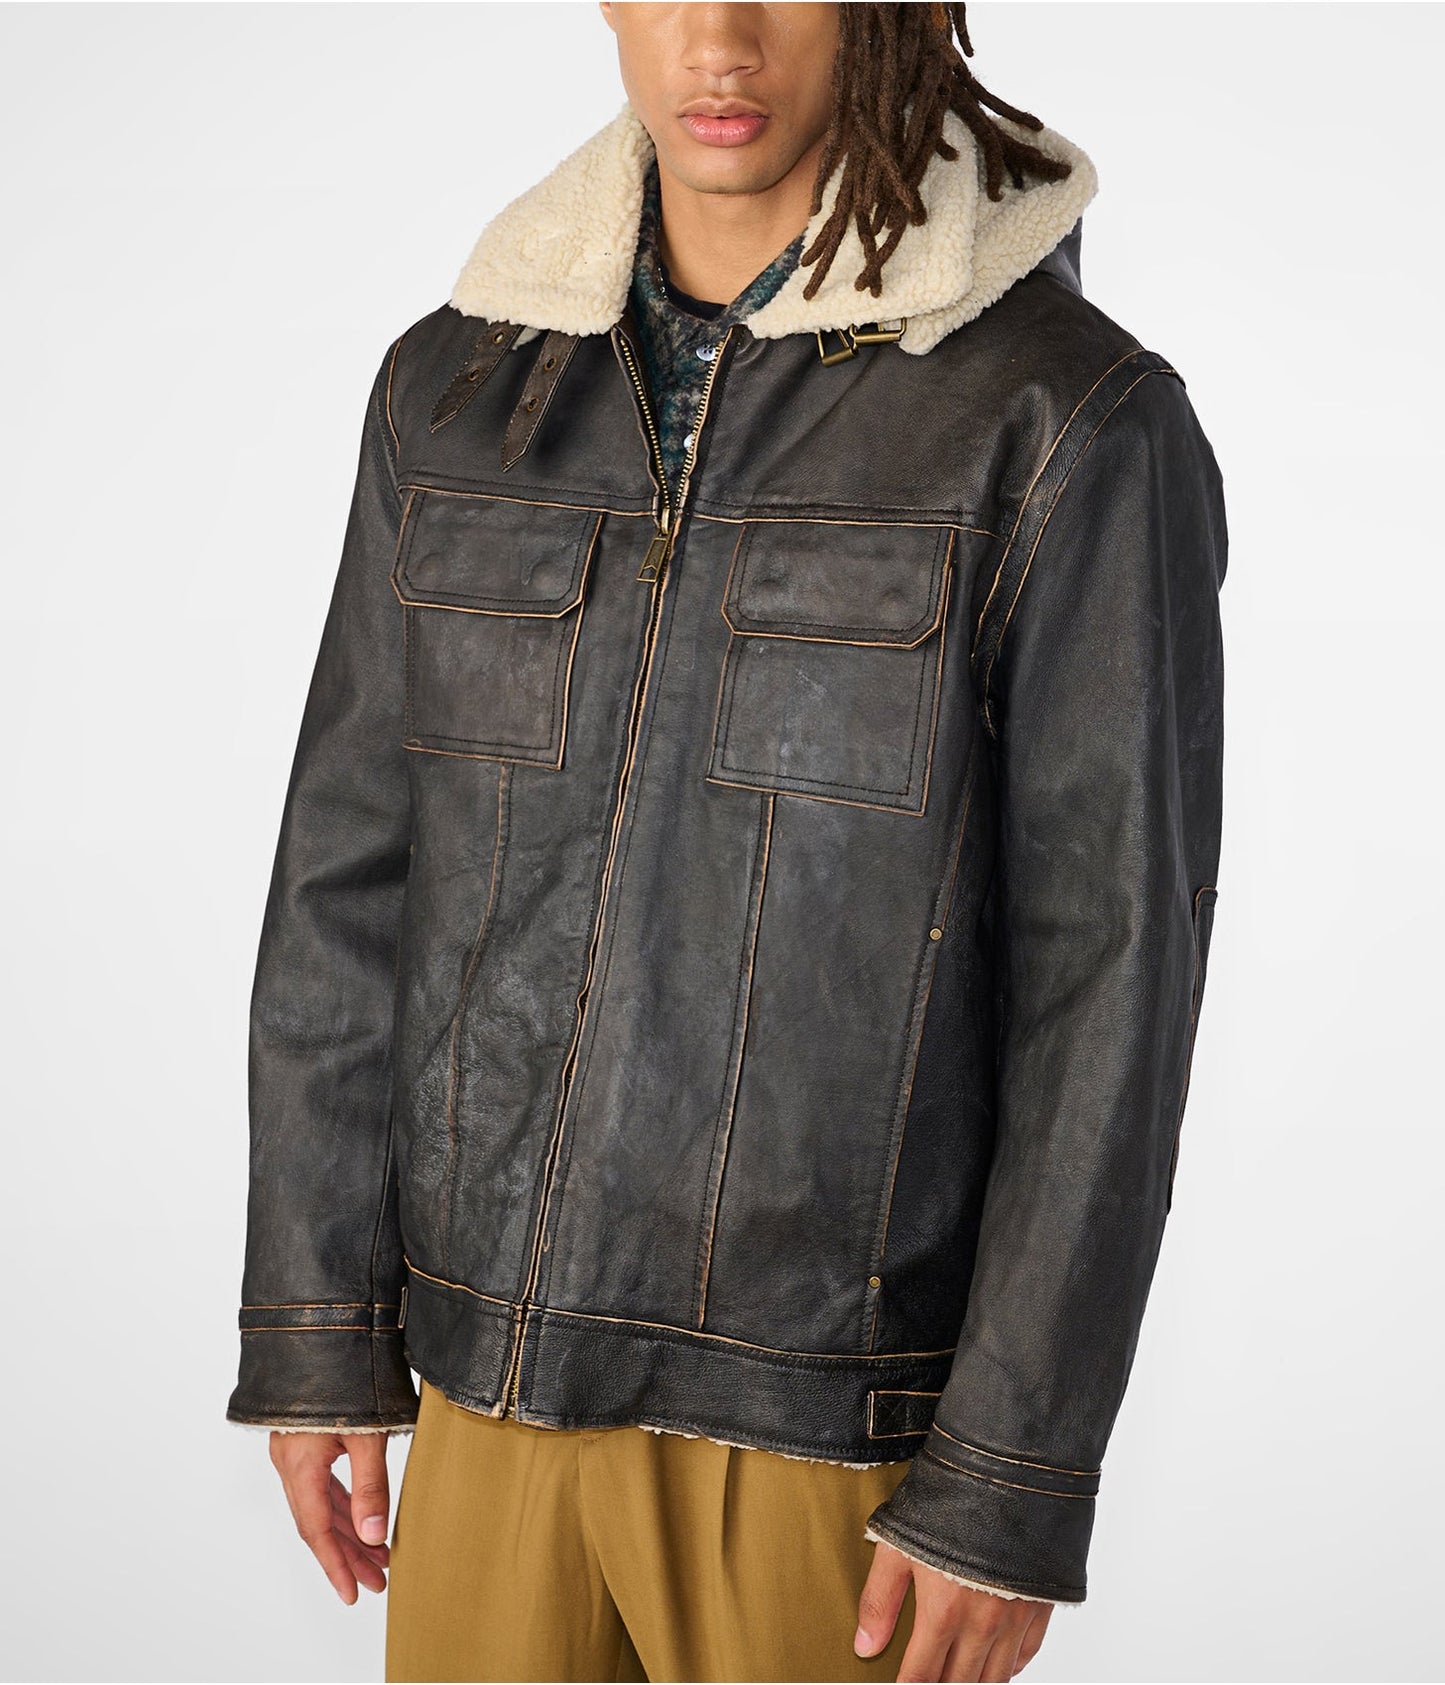 Men's Leather Vintage Jacket In Black Removable Hood